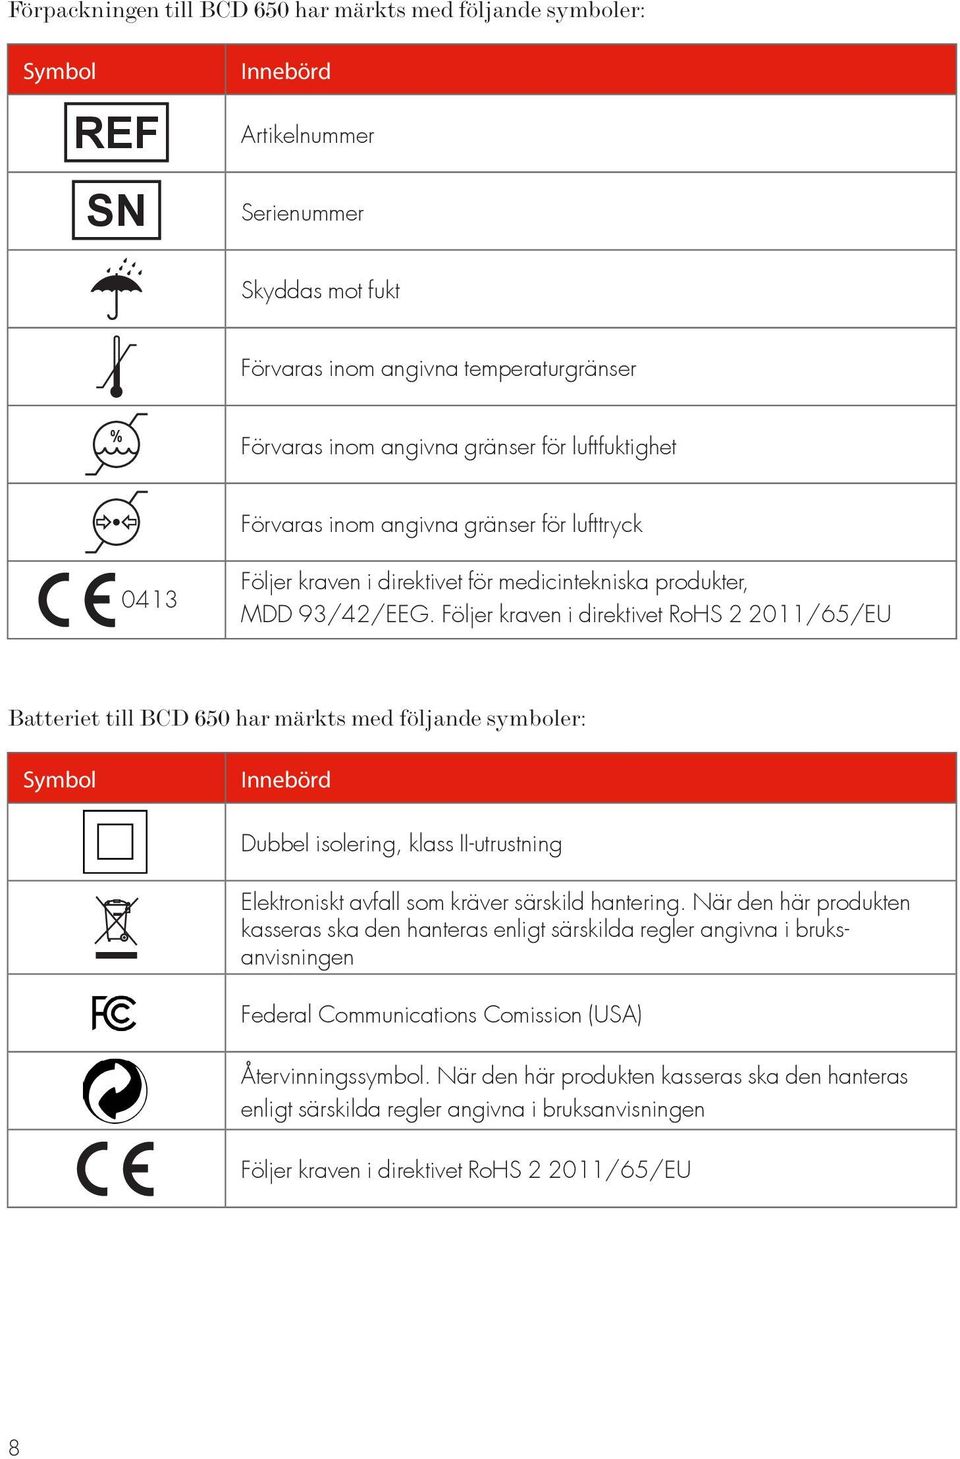 Följer kraven i direktivet RoHS 2 2011/65/EU Batteriet till BCD 650 har märkts med följande symboler: Symbol Innebörd Dubbel isolering, klass II-utrustning Elektroniskt avfall som kräver särskild